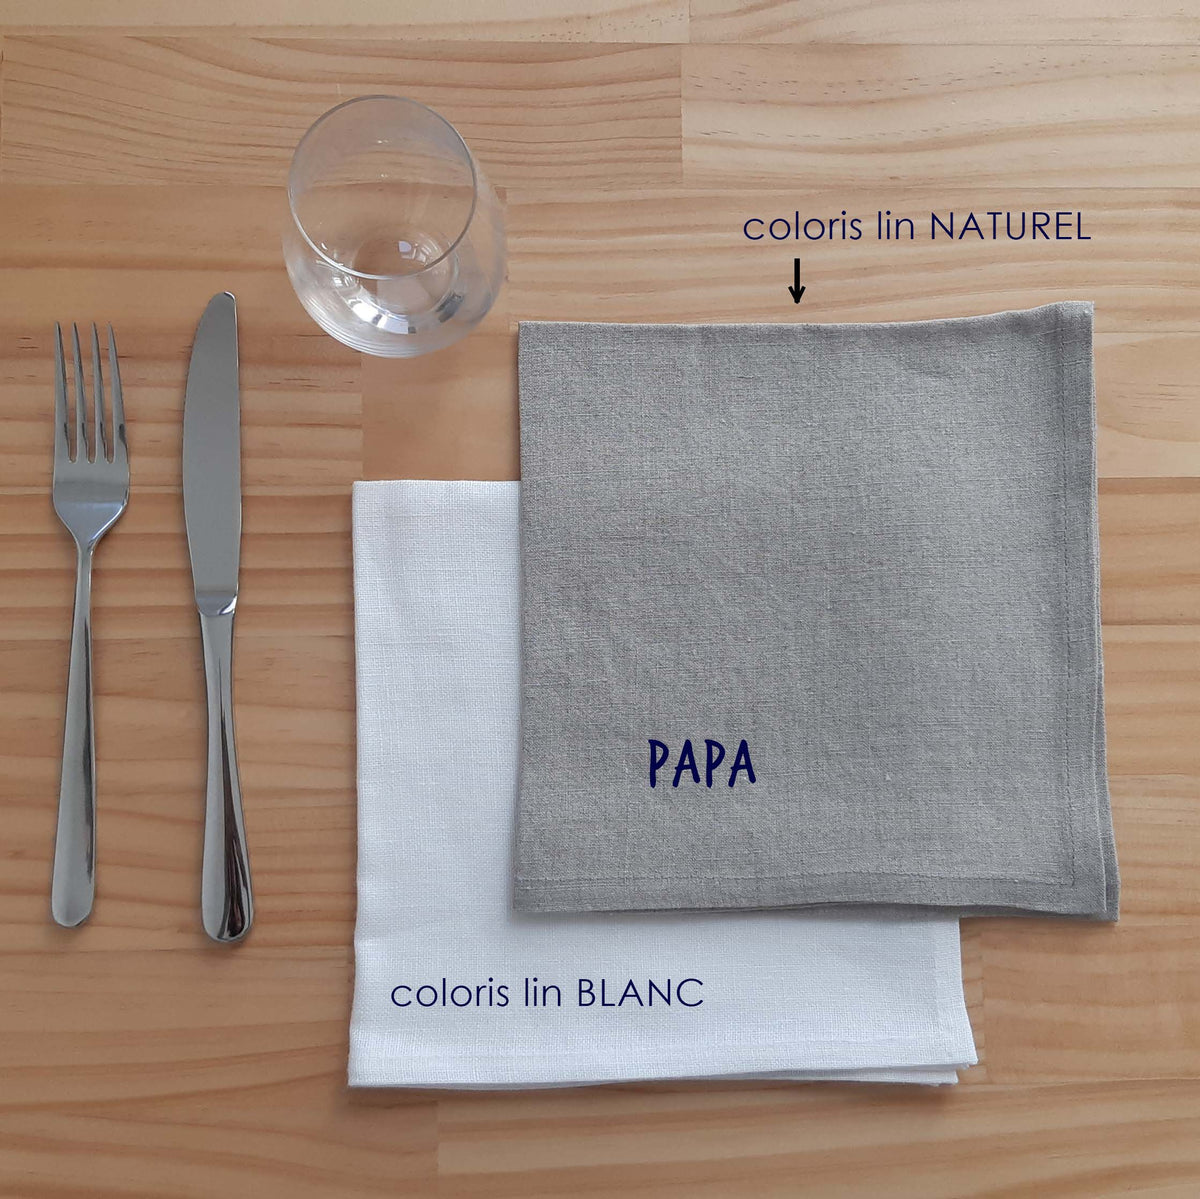 serviette "papa" table lin decoration éthique made in France sérigraphie environnement renaissance creation